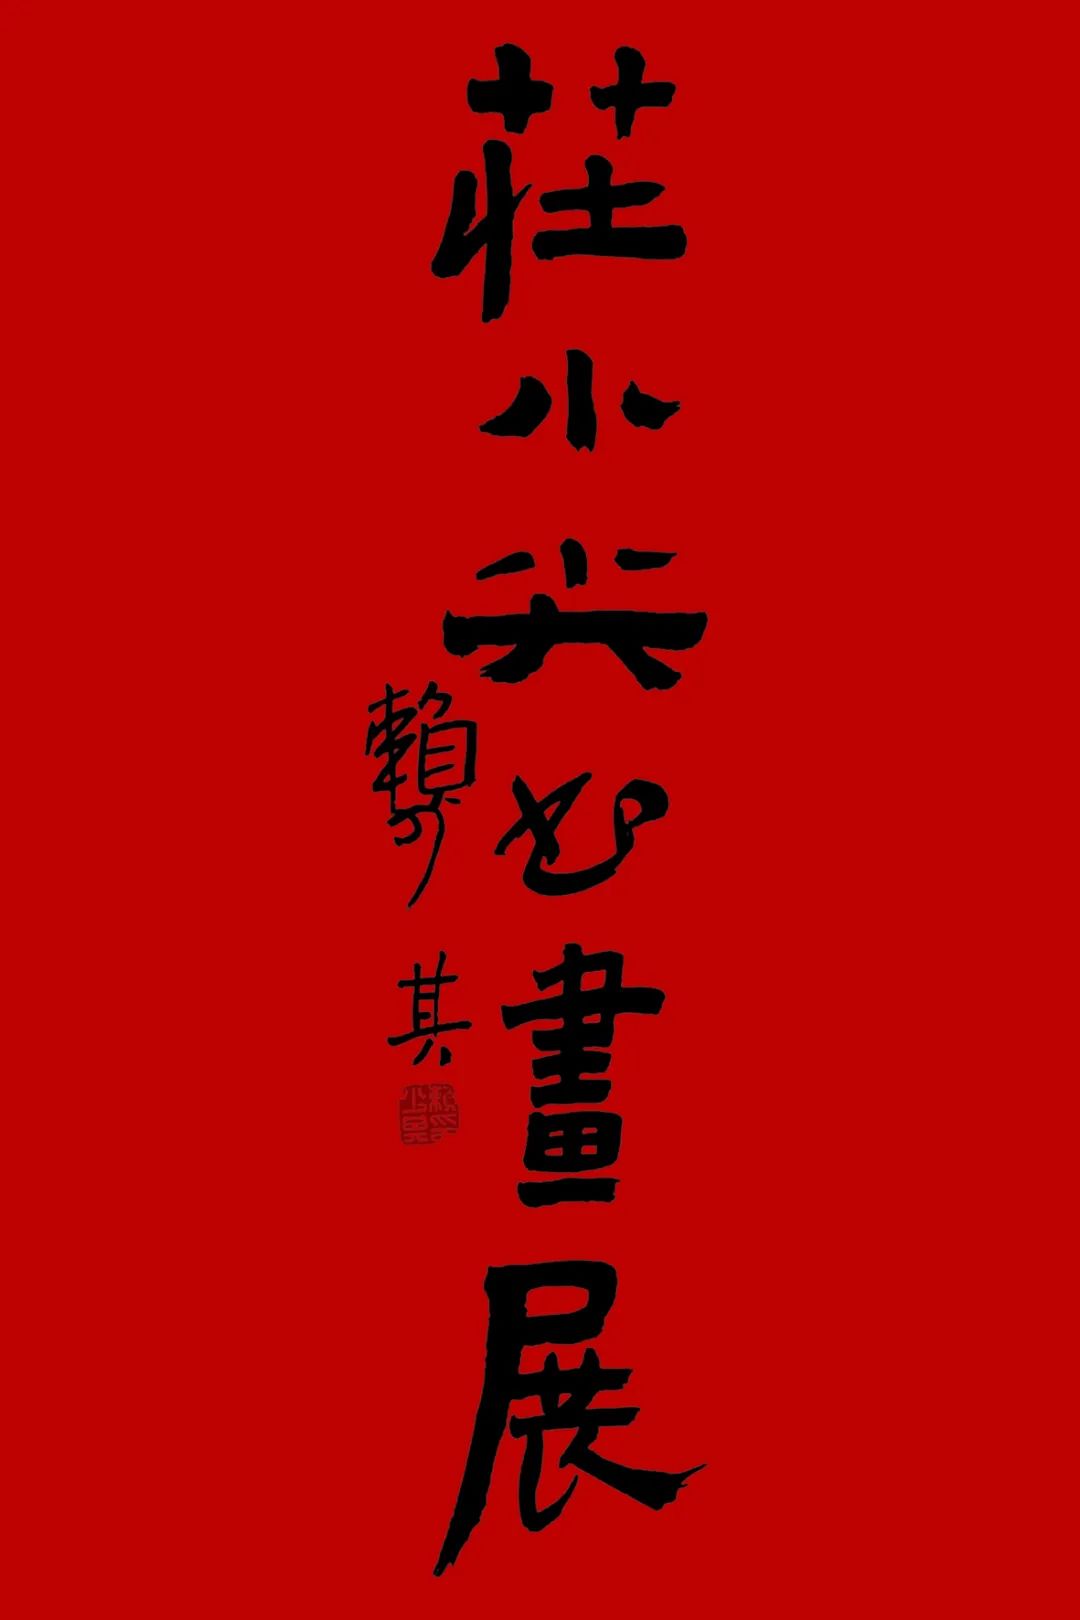 大气磅礴 浑厚华滋——著名艺术家庄小尖书画展1月11日将在广东潮州开展